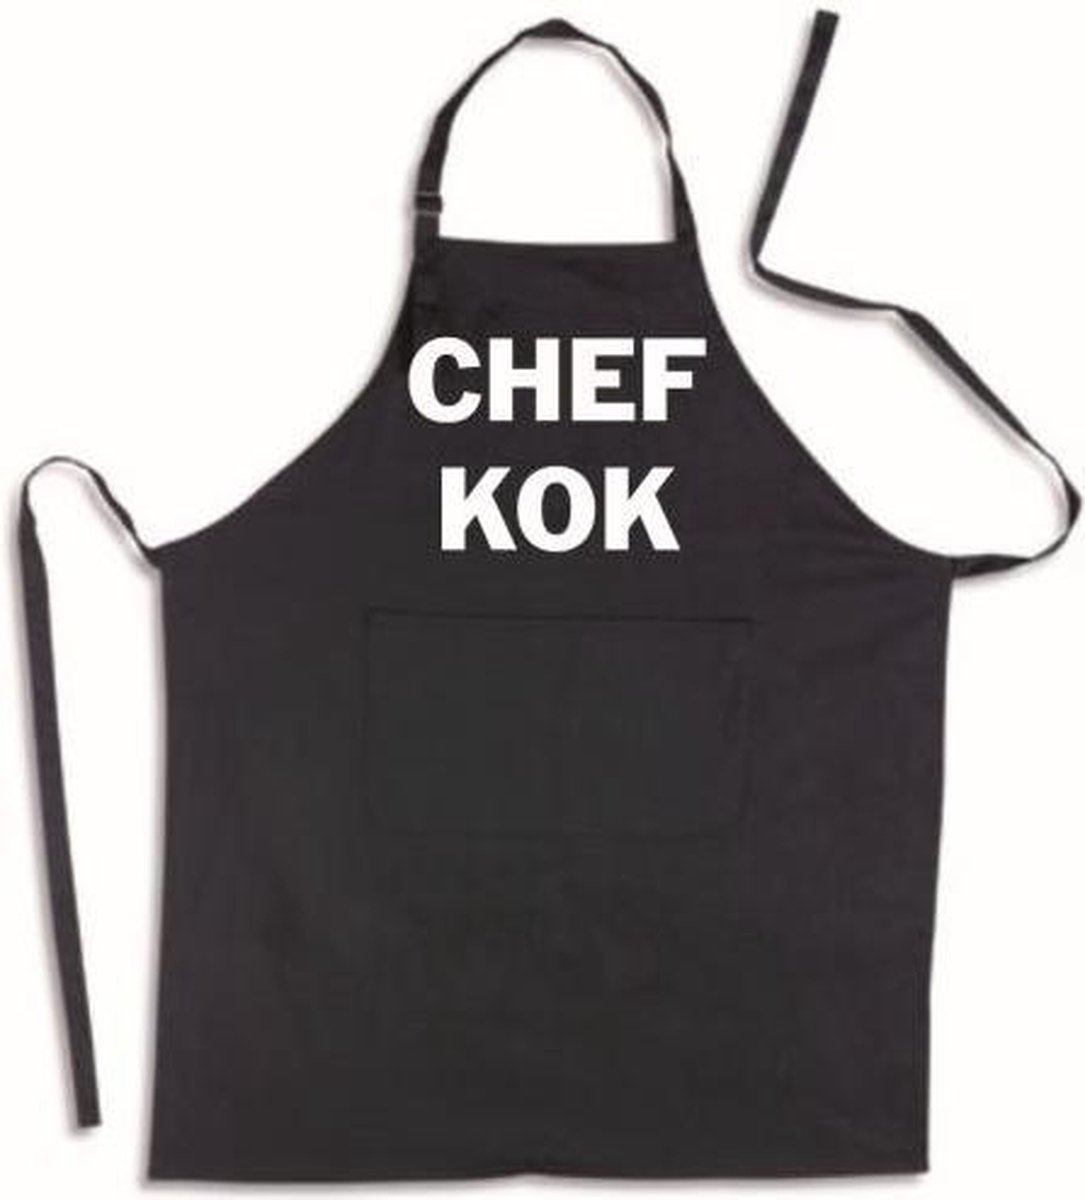 CHEF KOK - Luxe Schort Keukenschort met tekst - Zwart